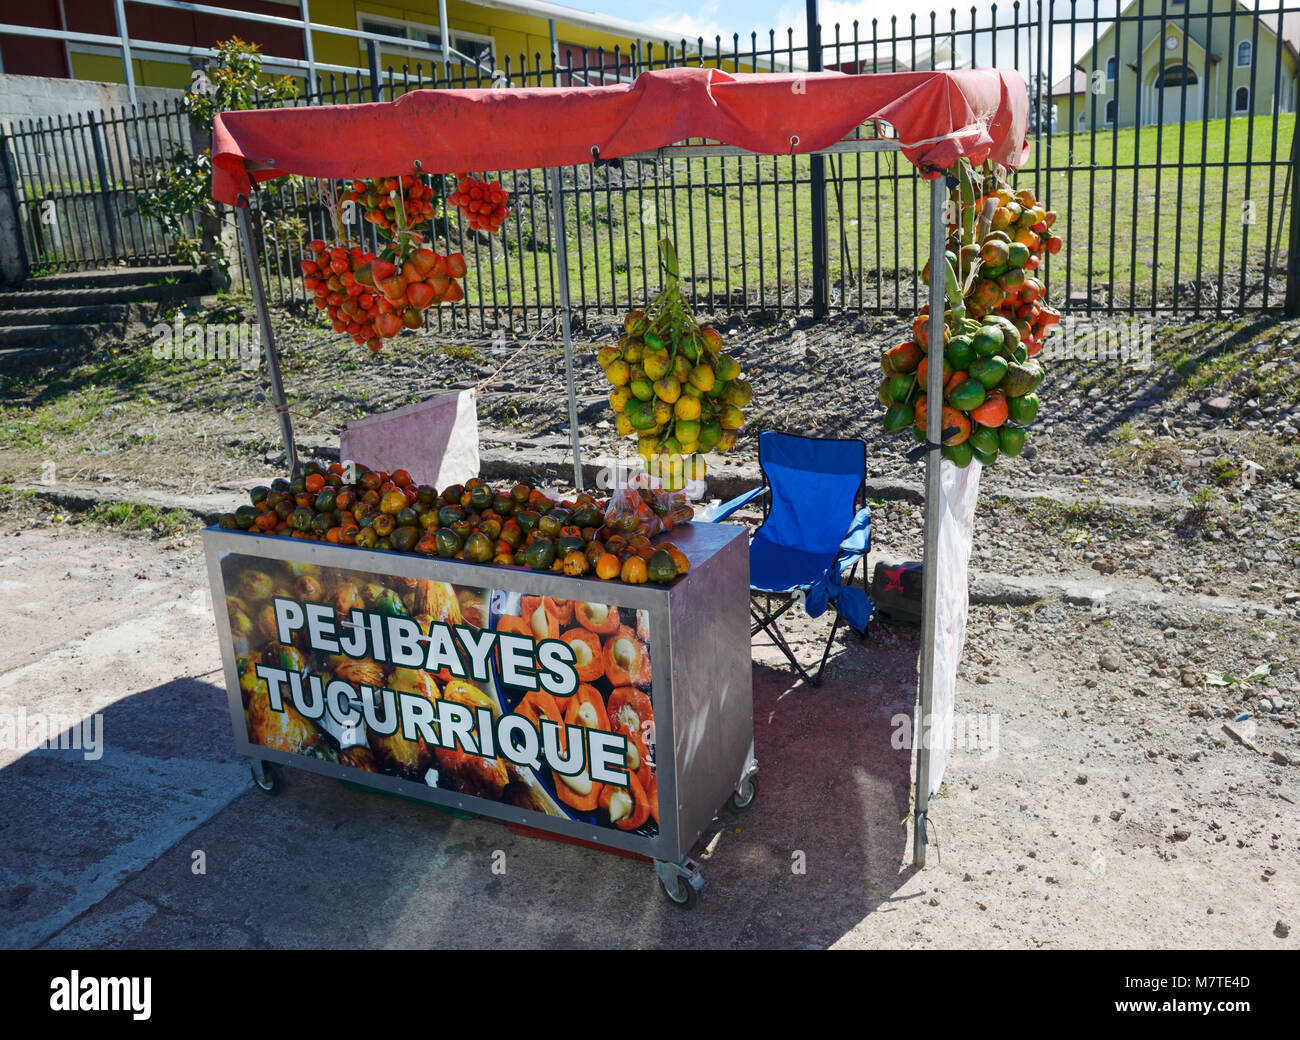 Vente pejibayes stand de fruits, le fruit de Bactris dasipaes péjiboie ou le fruit. Costa Rica Banque D'Images